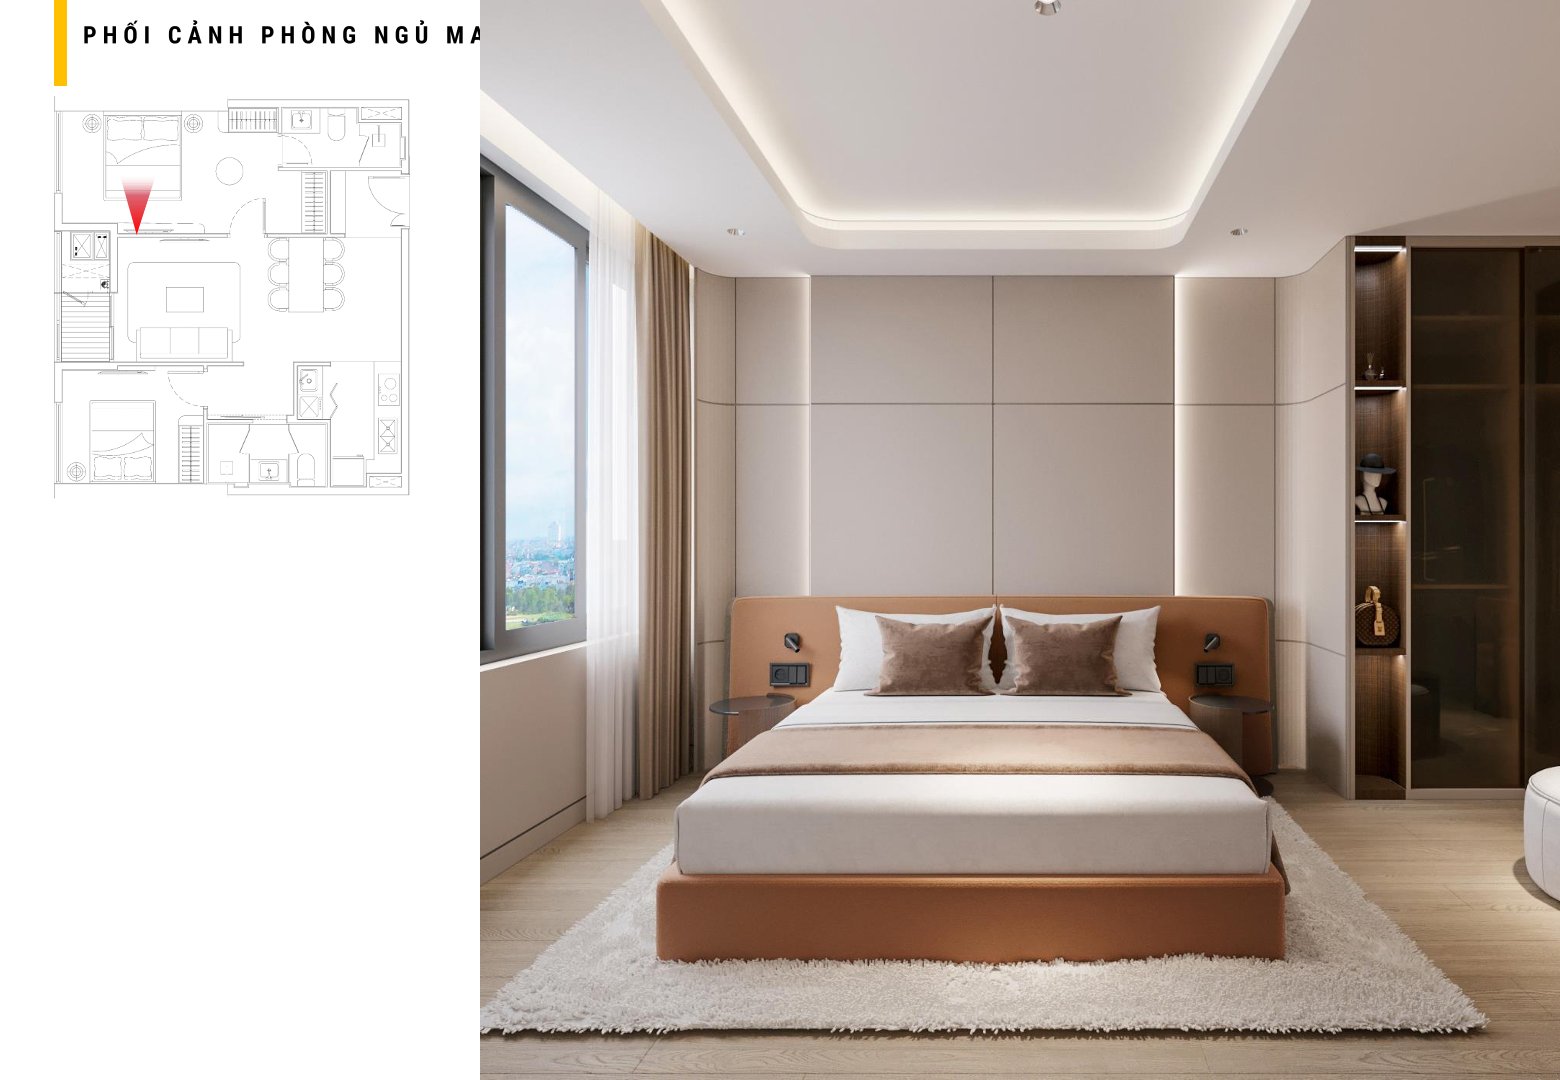 Căn hộ 2 phòng ngủ - Regal Residence Luxury - Viet Nam Smart City